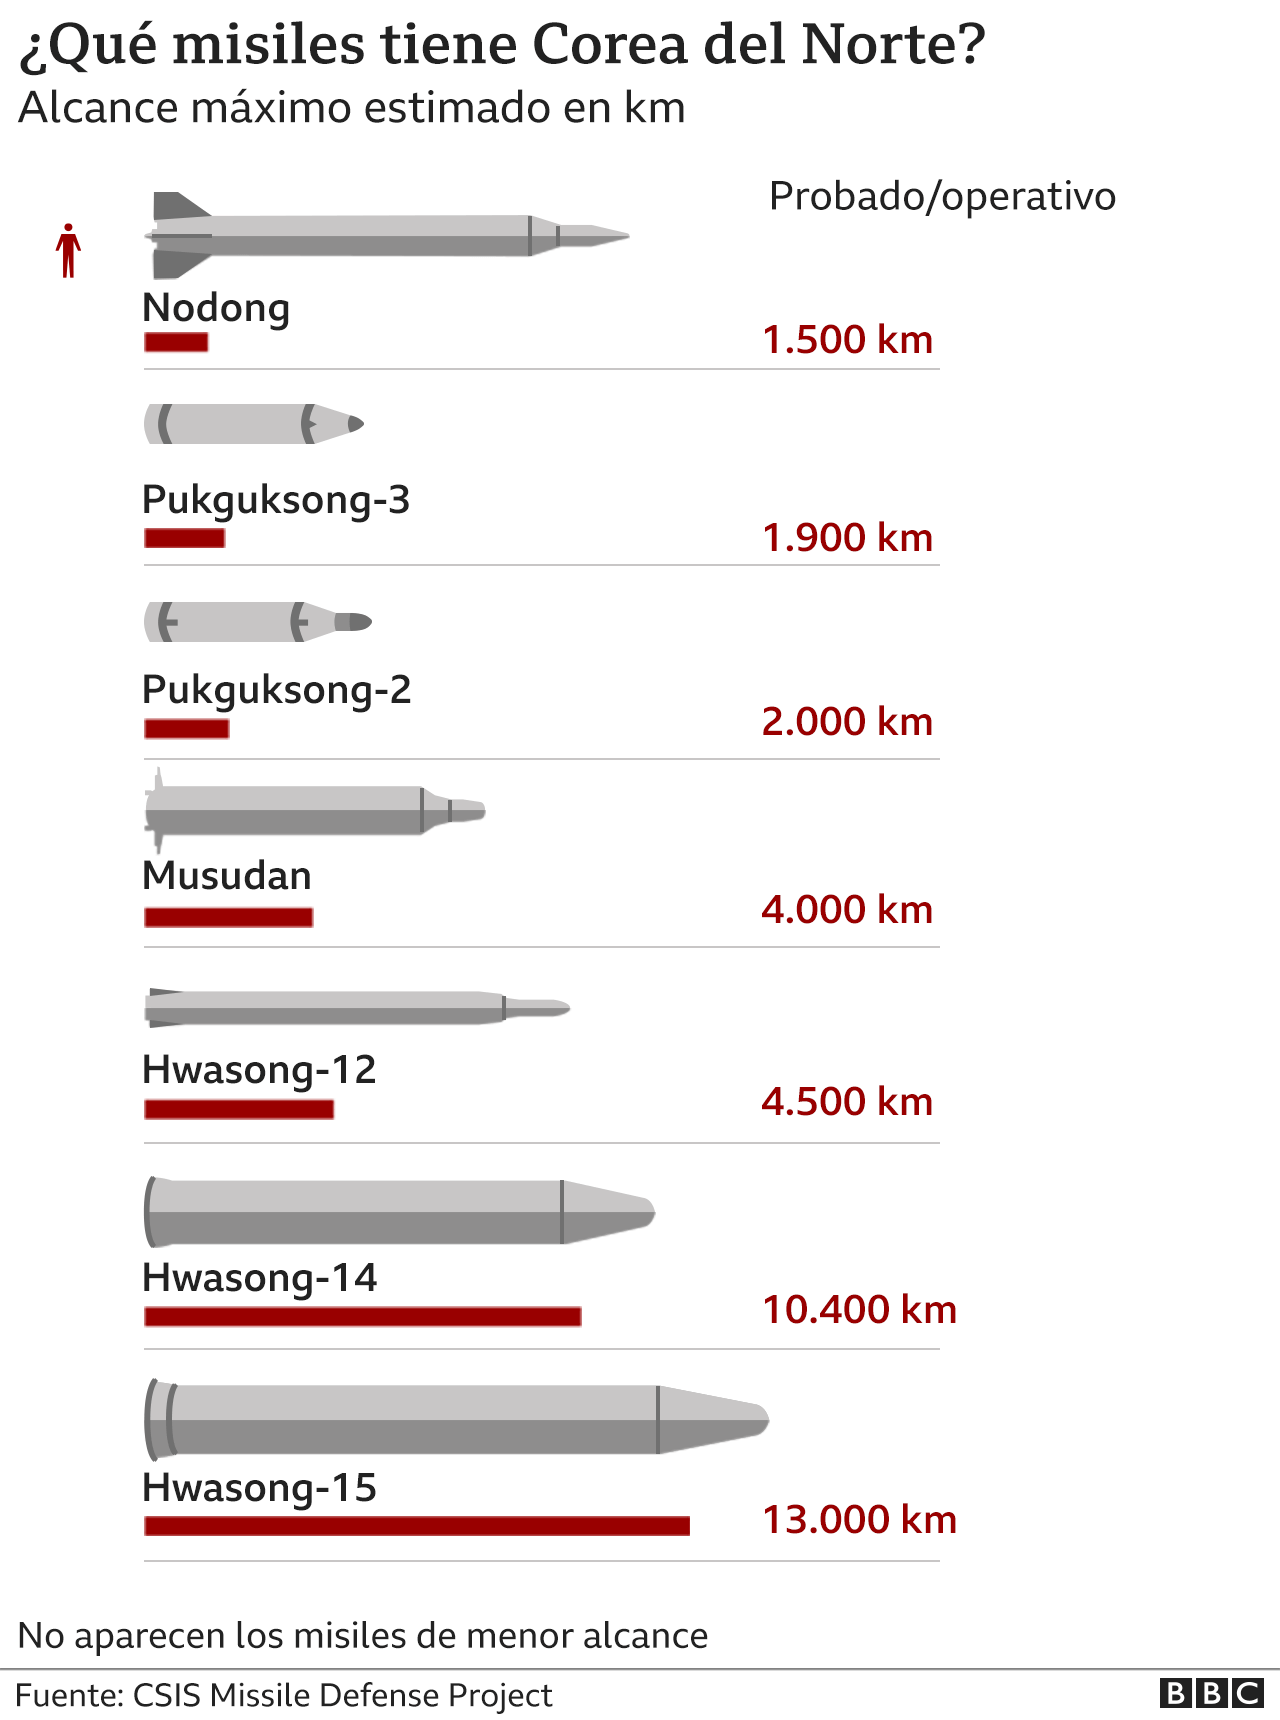 Gráfico que muestra diferentes misiles de largo alcance probados por Corea del Norte